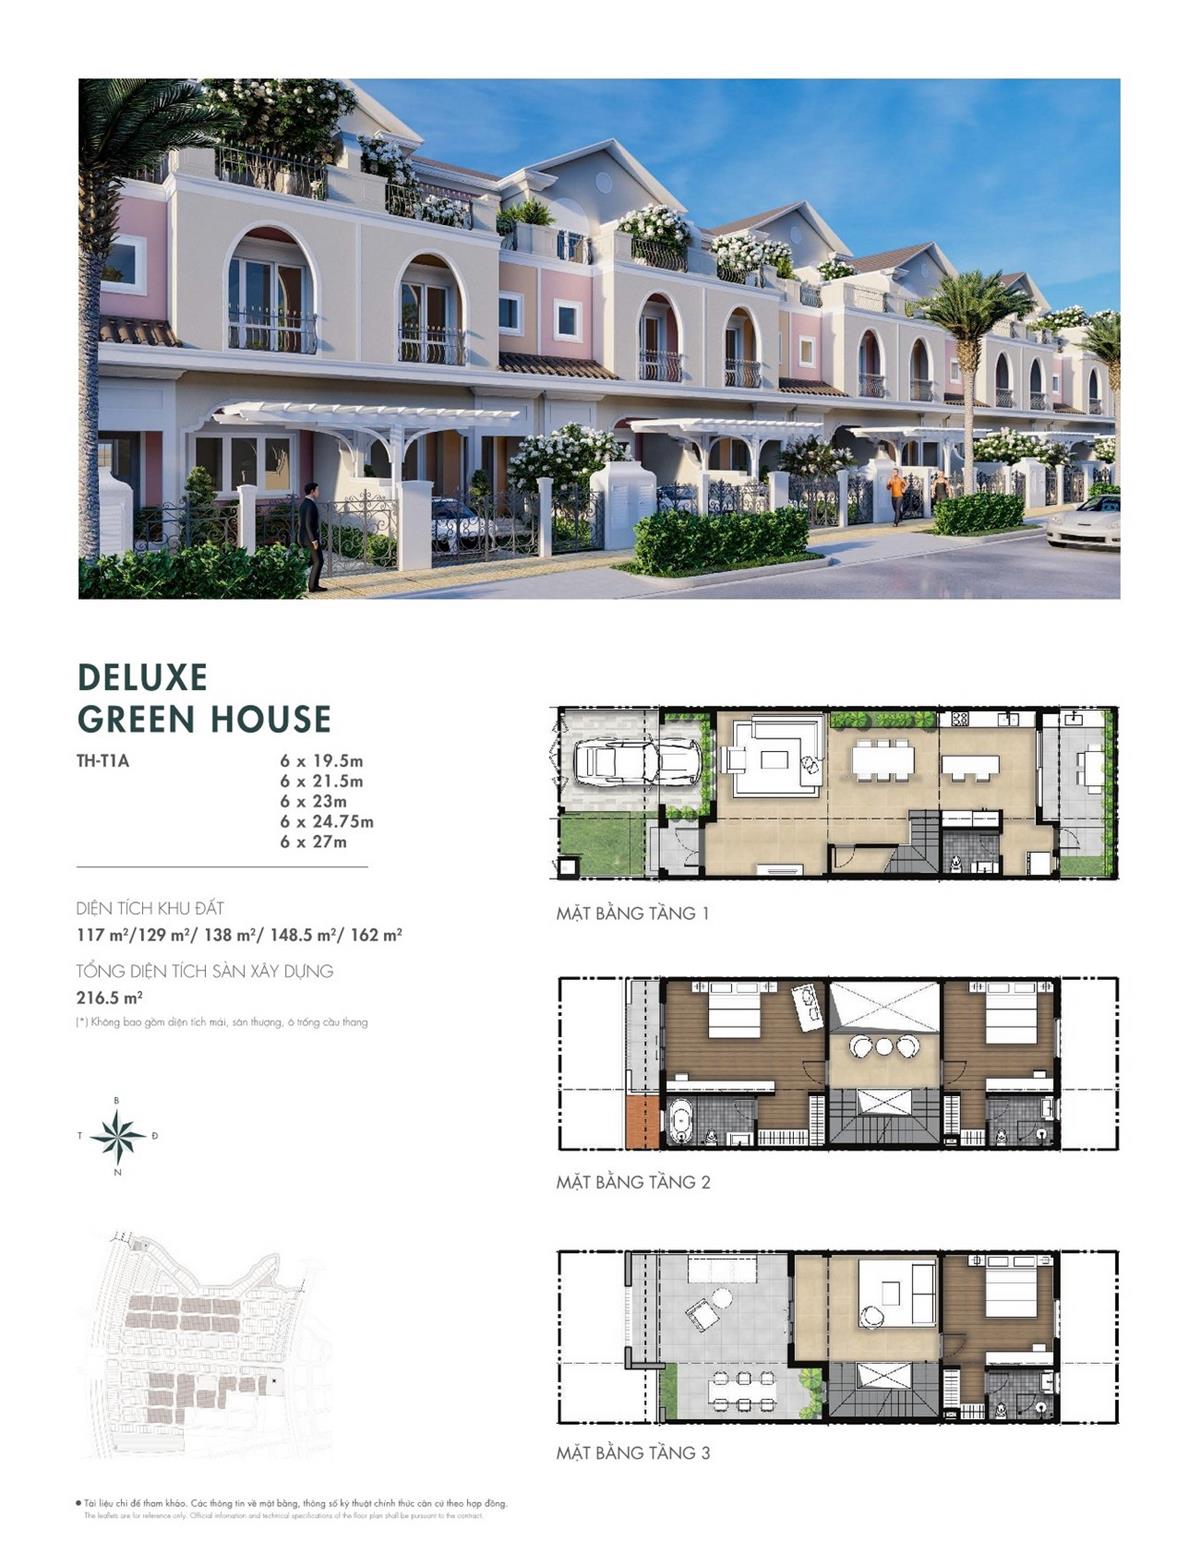 Thiết kế Deluxe Green House dự án nhà phố Aqua City The River Park 1 TP. Biên Hòa Đường Ngô Quyền nhà phát triển Novaland